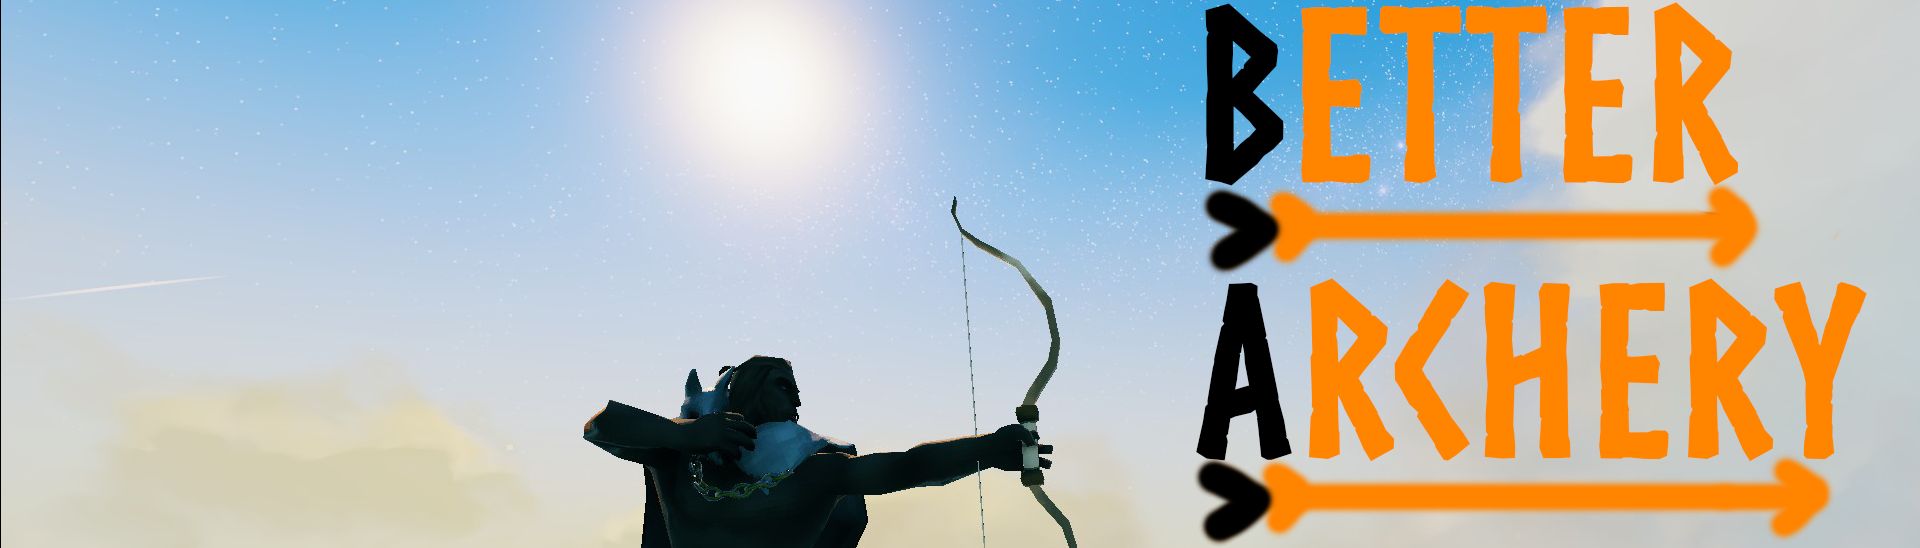 Better Archery - Мод улучшающий стрельбу из лука